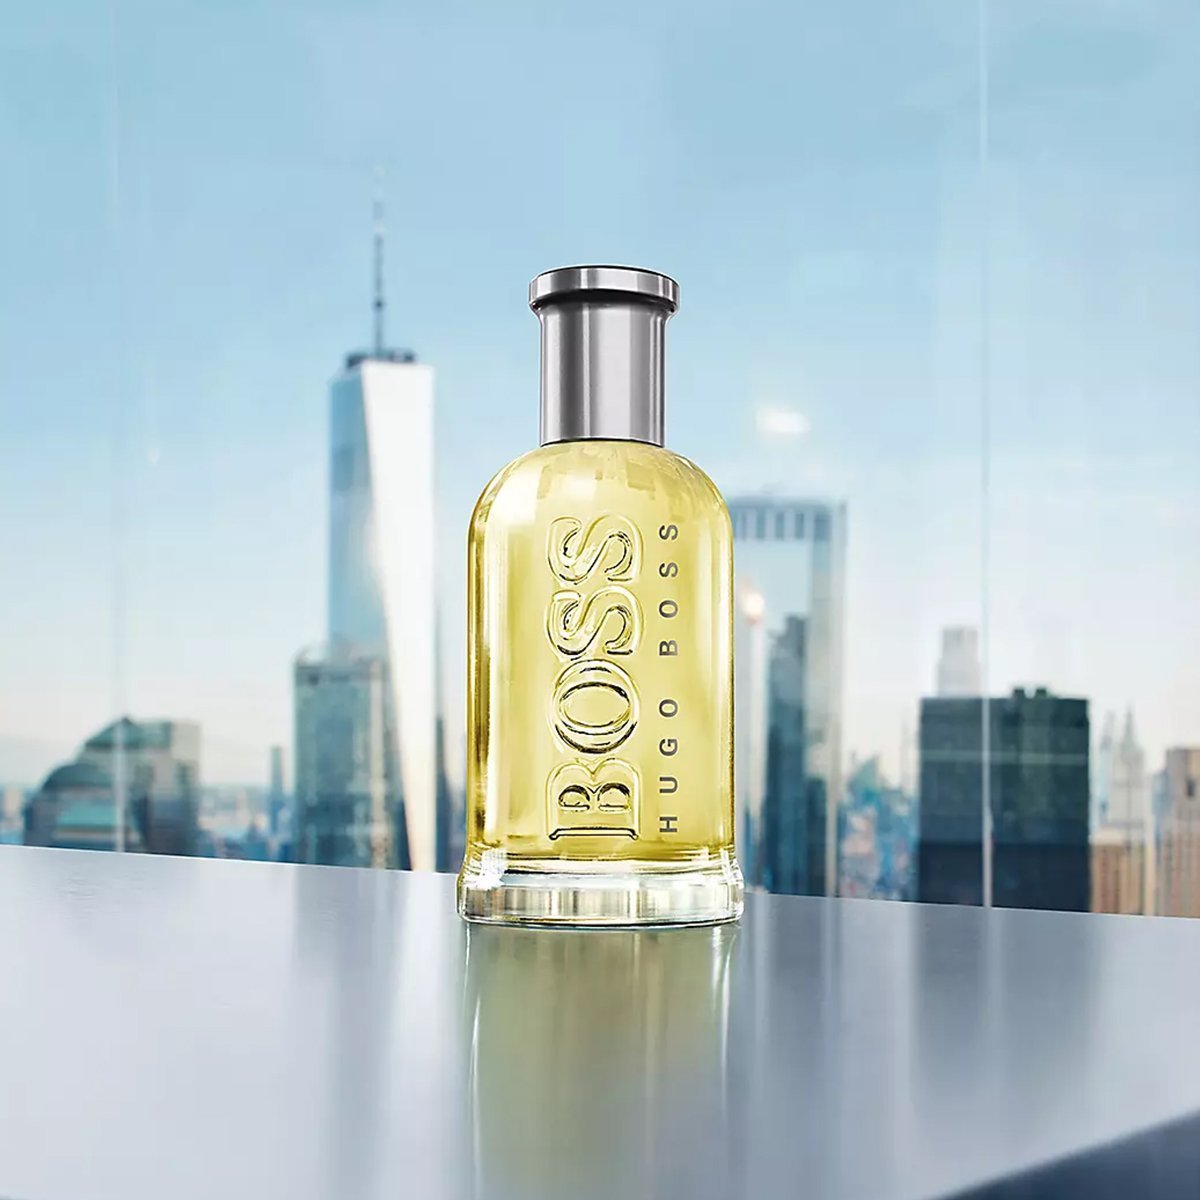 Hugo Boss Bottled Travel Set For Men - My Perfume Shop Australia